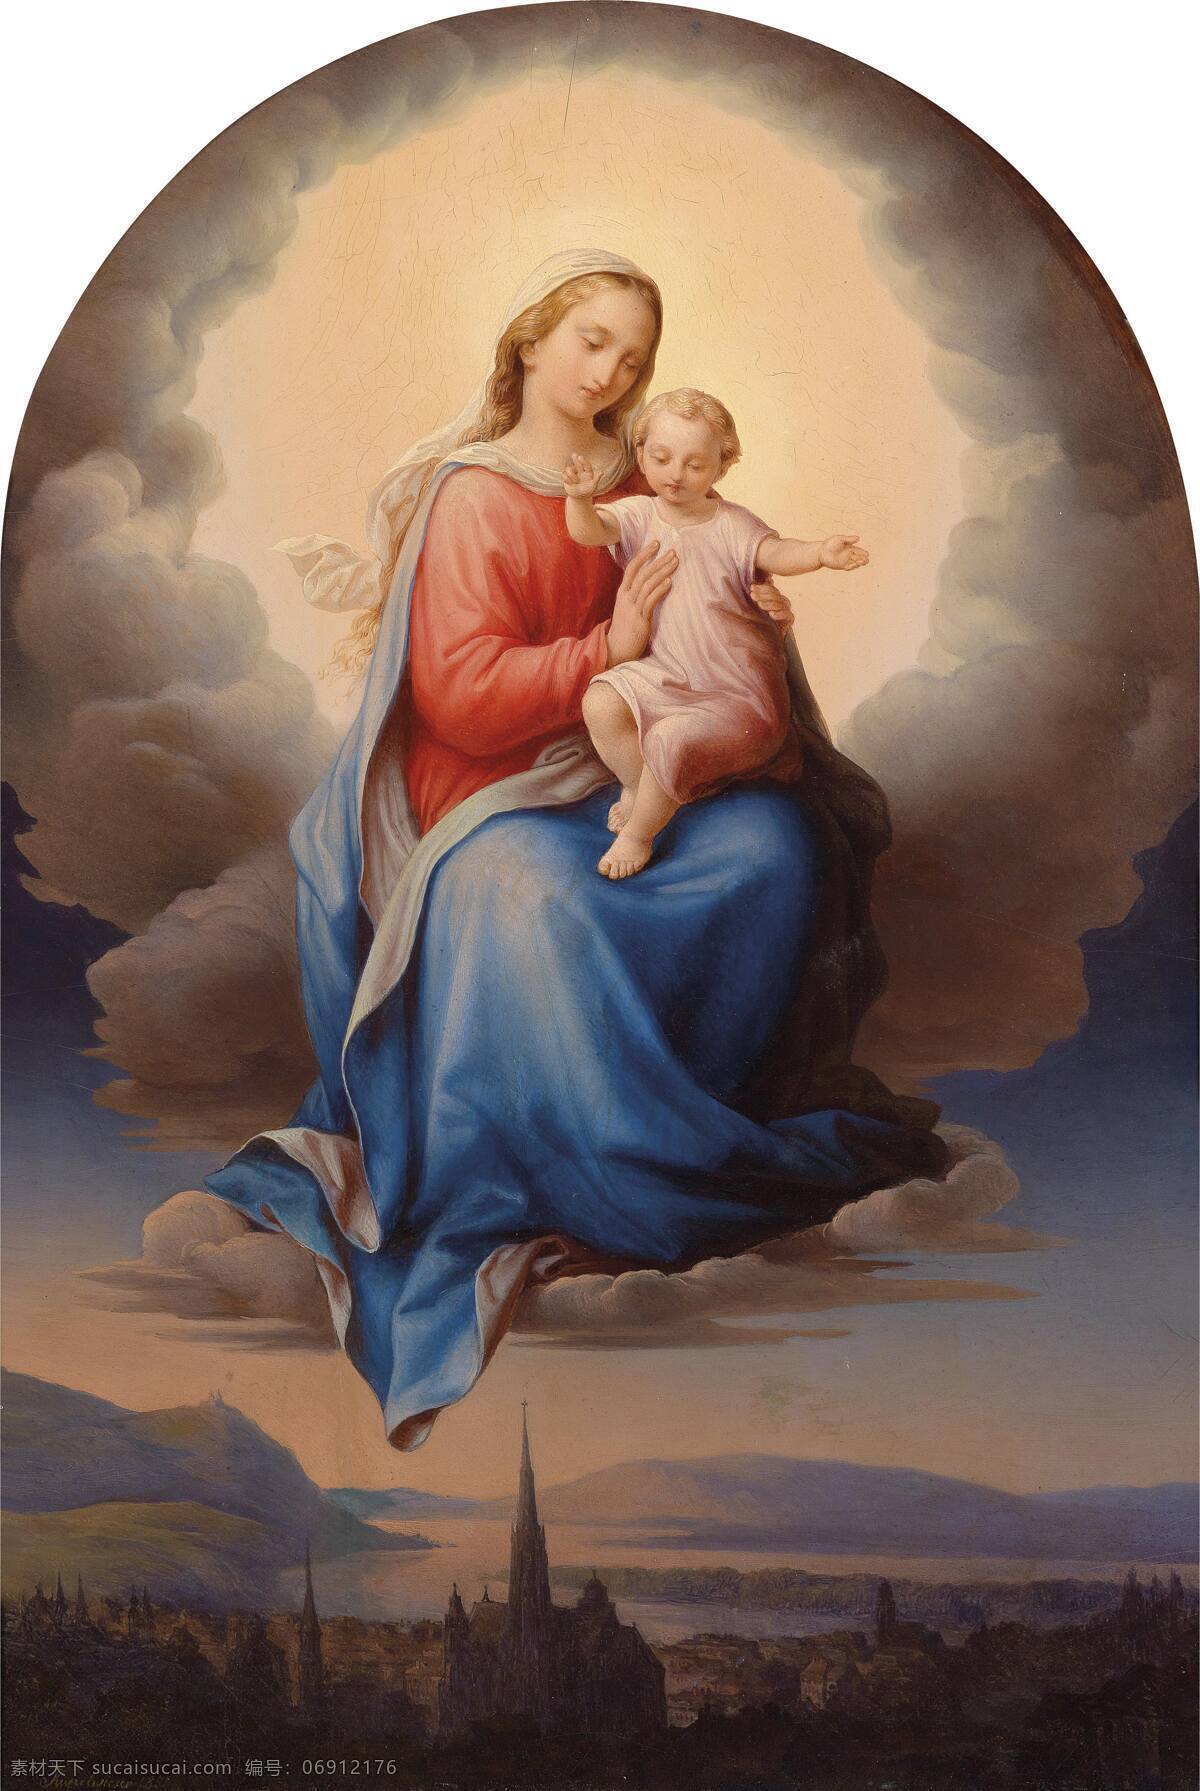 圣母与圣子 世纪 宗教 油画 圣母玛丽娅 圣婴基督 绘画书法 文化艺术